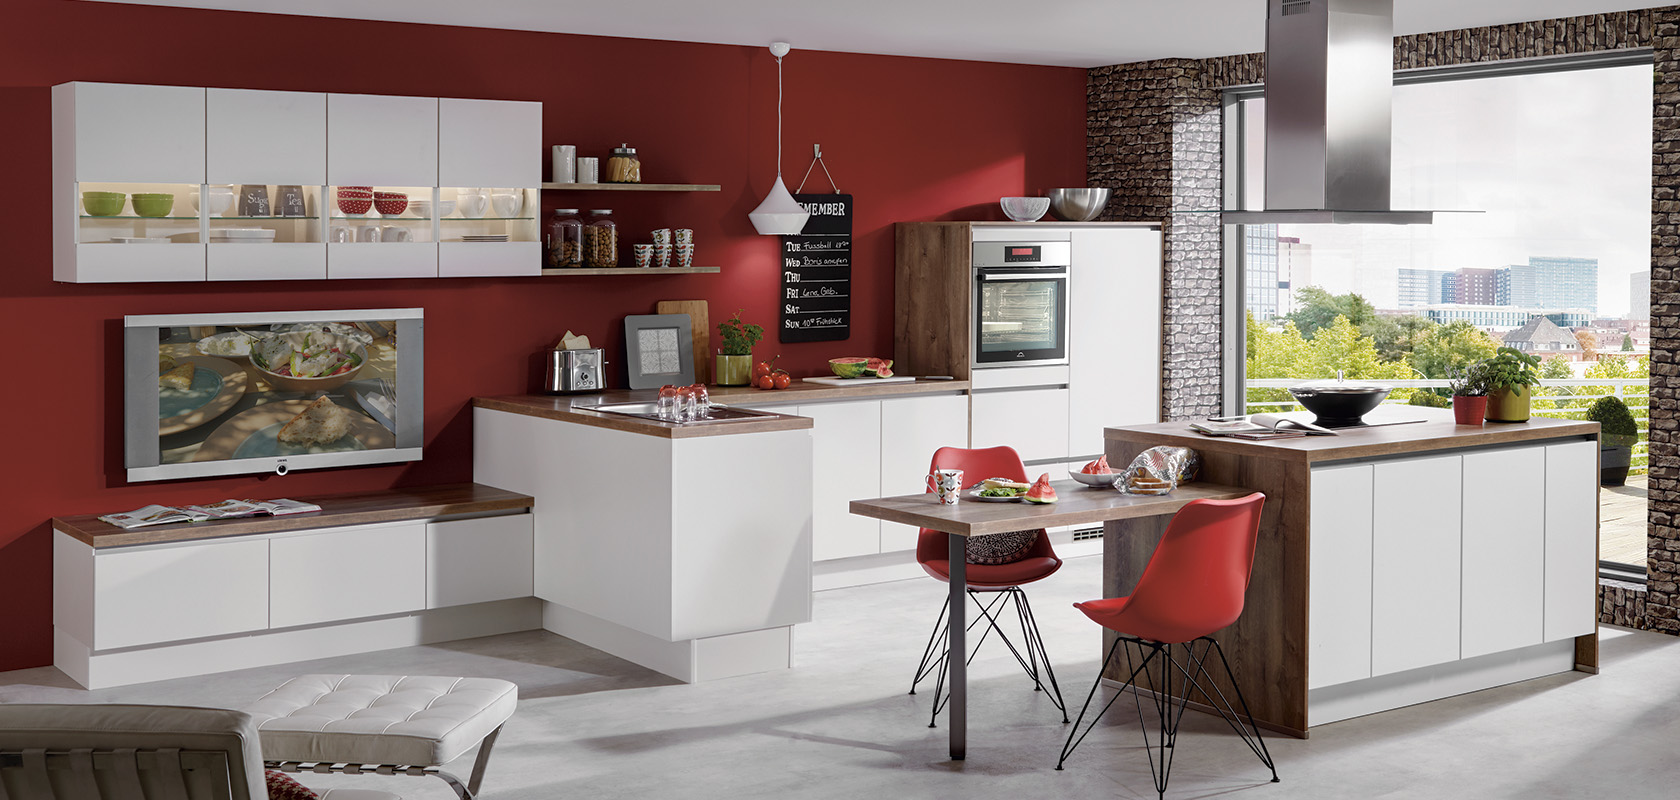 Interni di cucina moderna con mobili modulari bianchi, pareti rosse d'accento, elementi in mattoni, elettrodomestici eleganti e un'accogliente area pranzo con una vista panoramica dalla finestra.